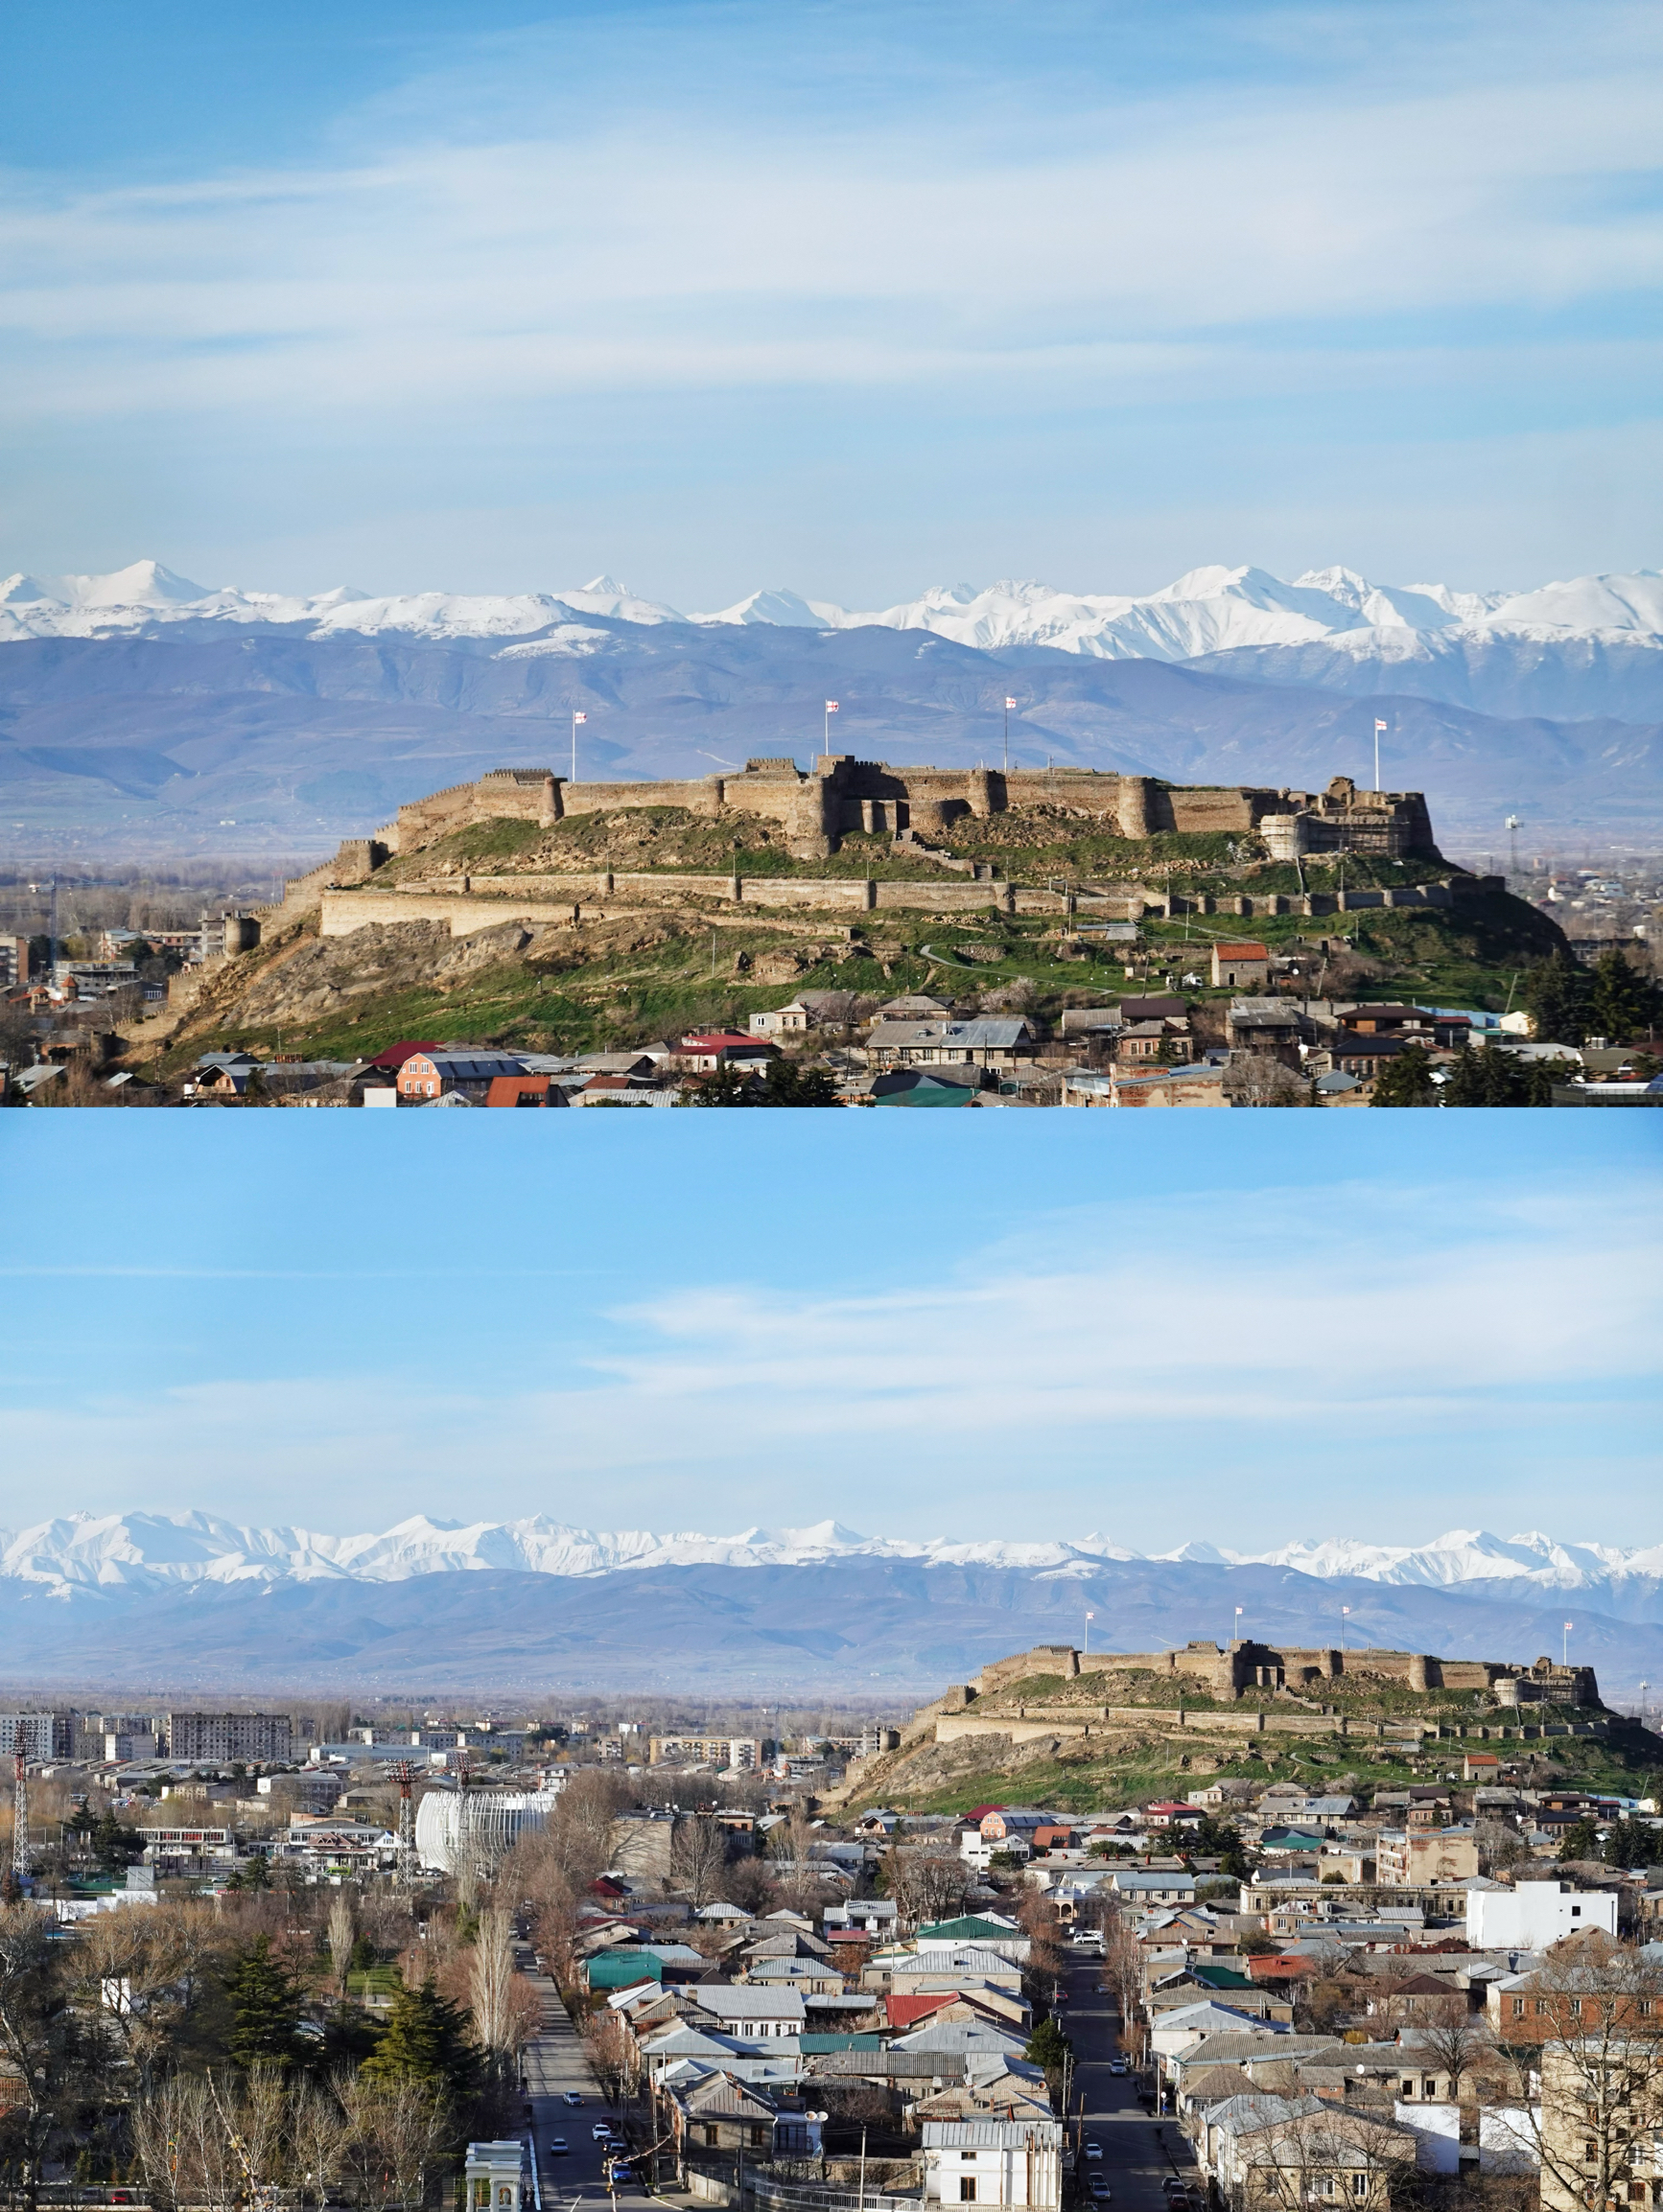 免签国亚美尼亚和格鲁吉亚的一些实战补充